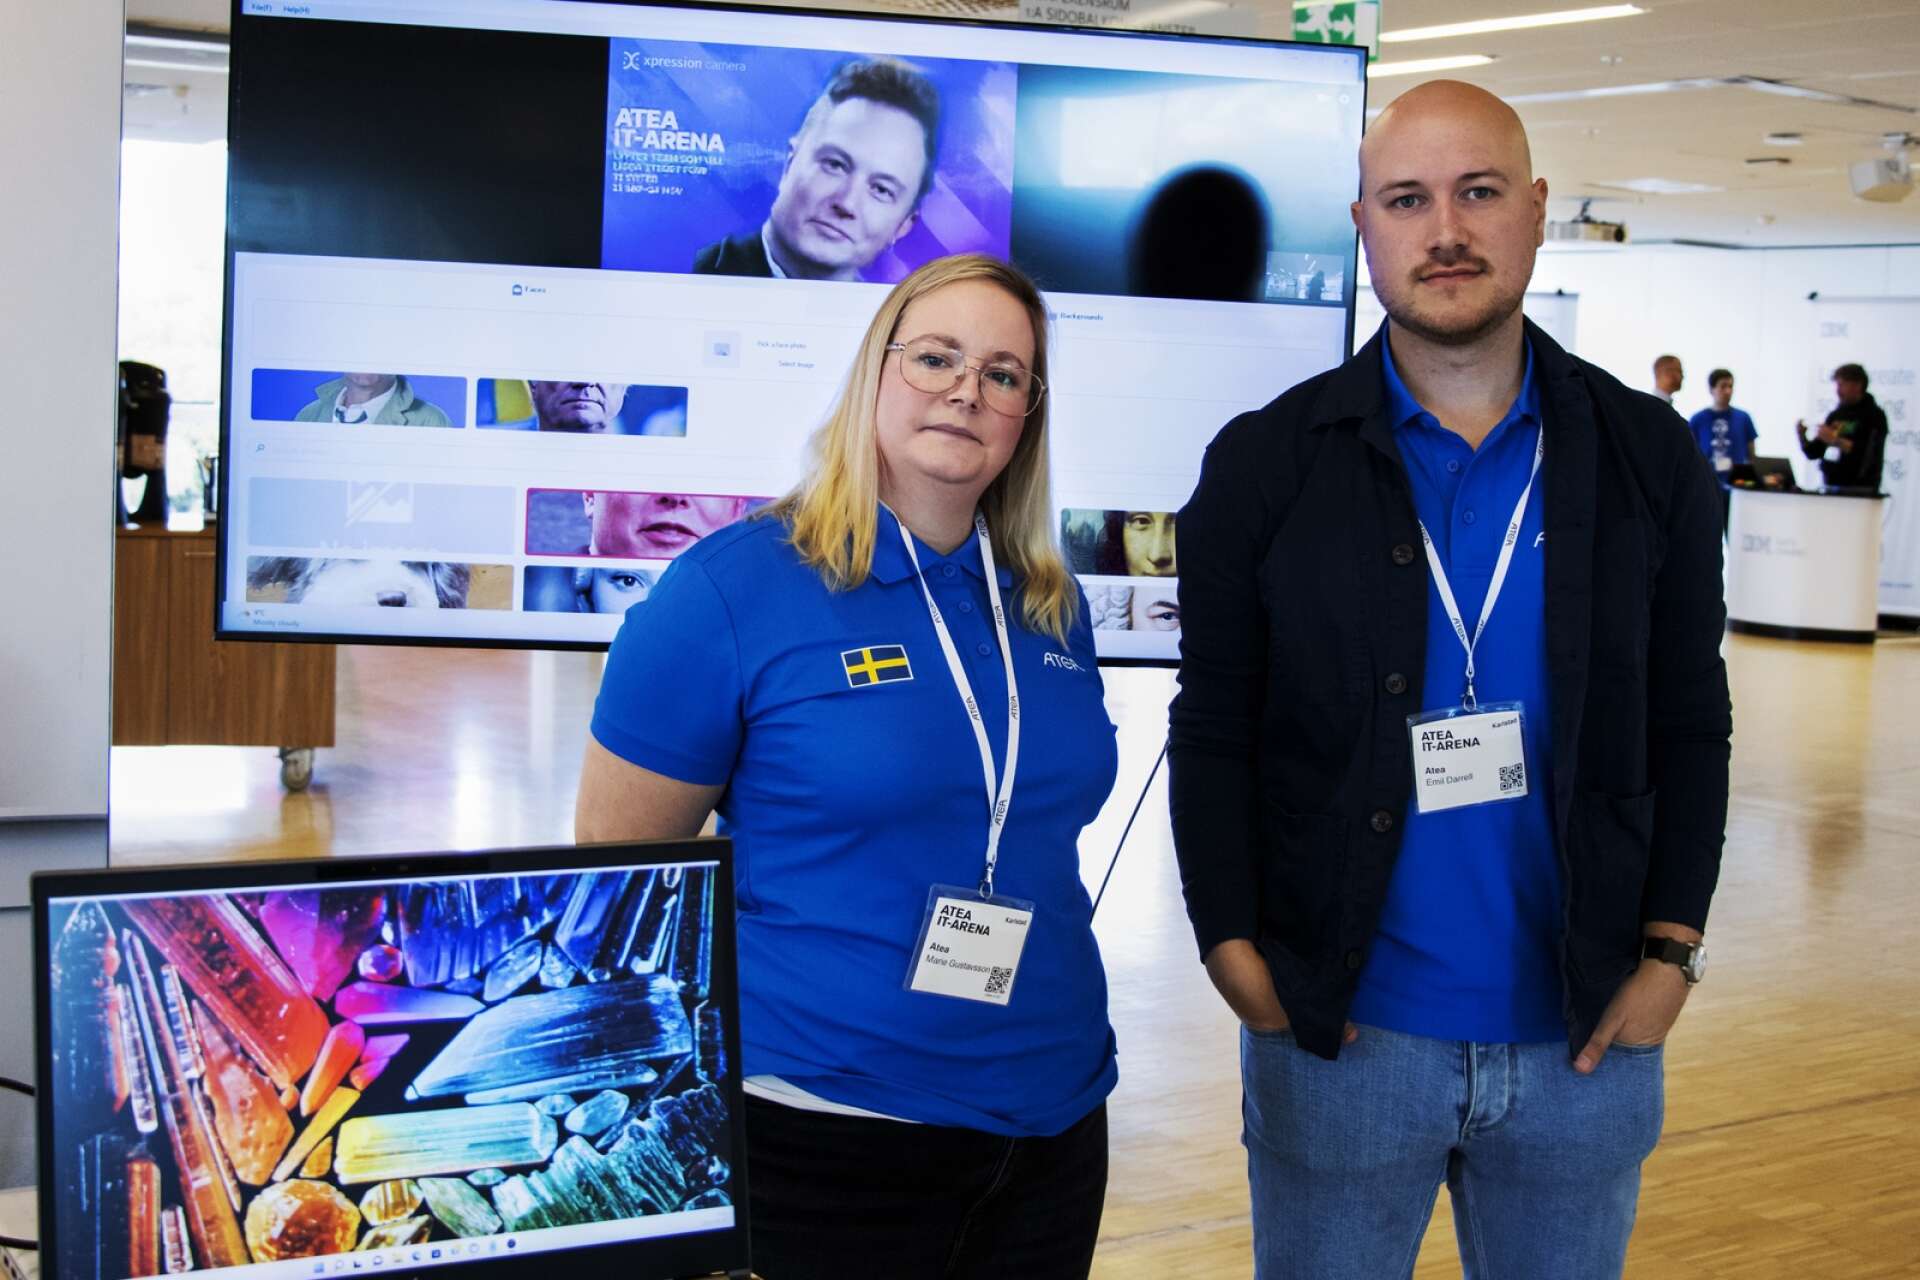 Ateas IT-säkerhetsspecialister Marie Gustavsson och Emil Darrell visade exempel på deepfakes under IT-arenan på Karlstad CCC. Exemplet med Teslagrundaren Elon Musk i bakgrunden gjordes med hjälp av ett gratisprogram.